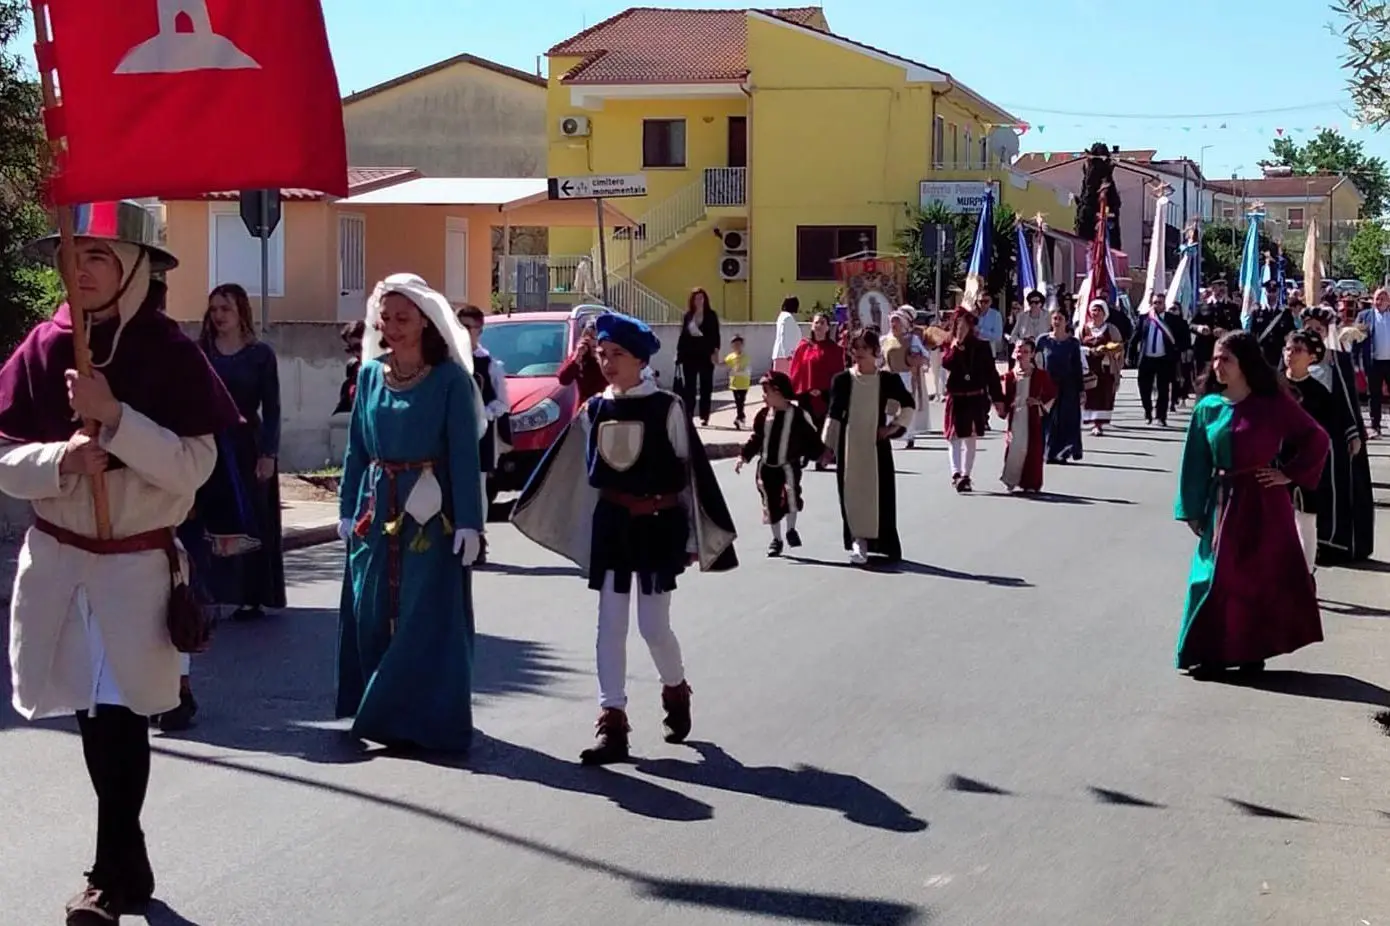 La processione in costume medievale (foto Antonio Caria)